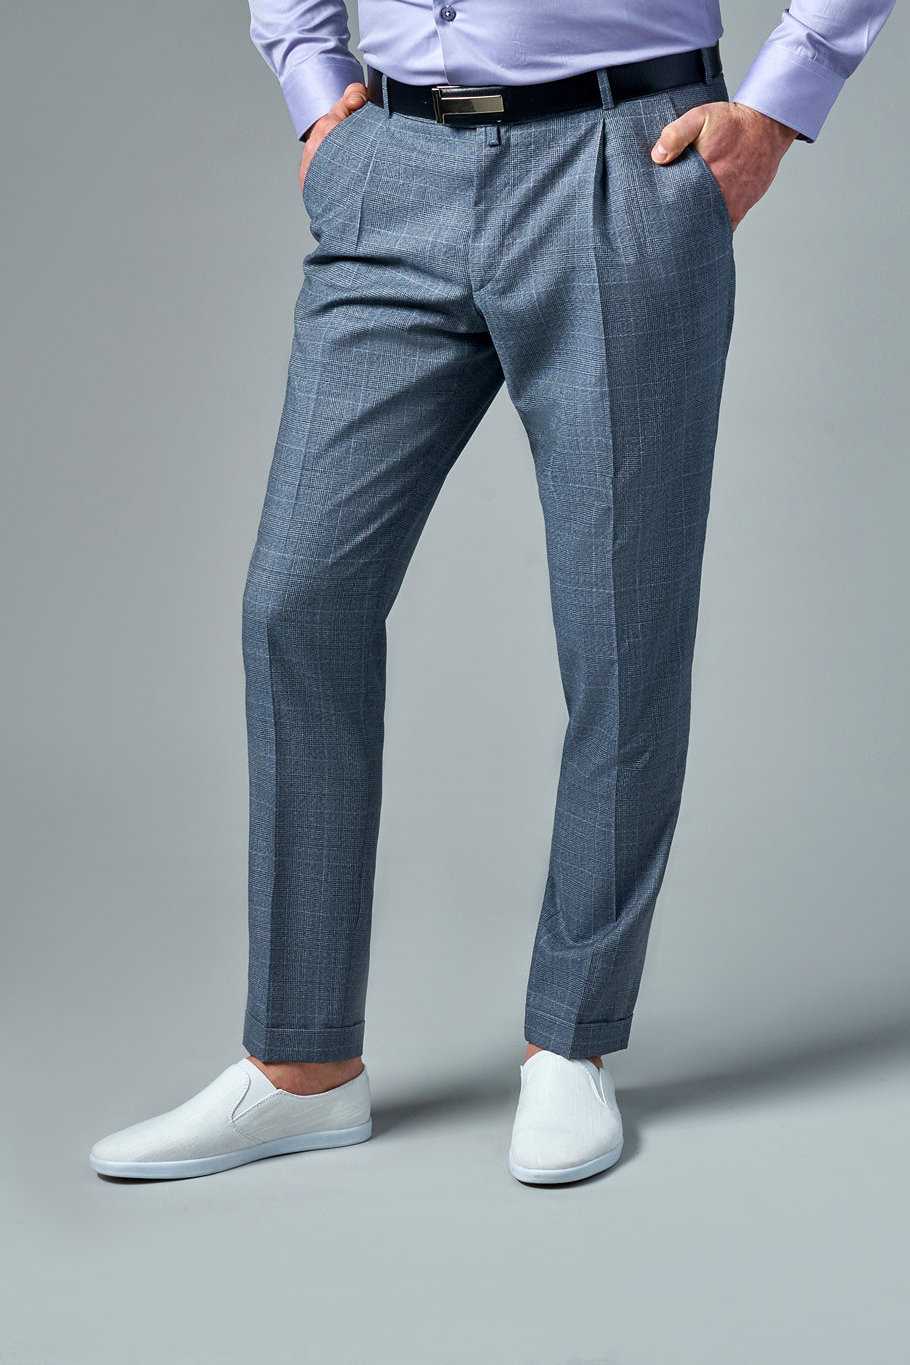 Штаны галифе, с чем носят брюки необычного кроя, советы стилистов